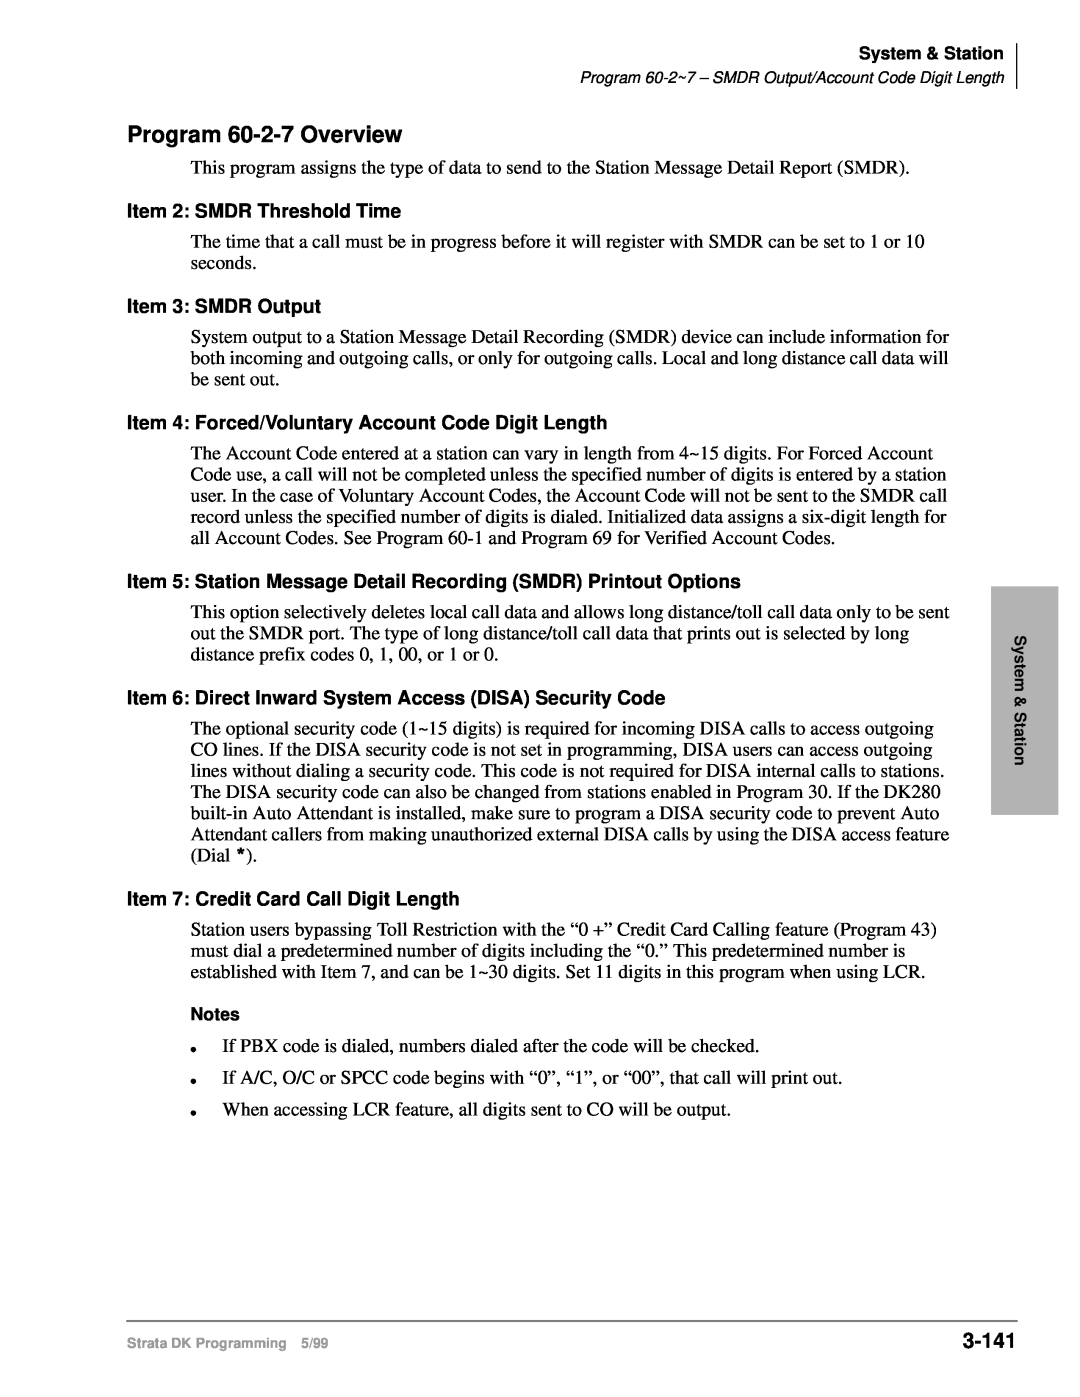 Toshiba dk14 manual Program 60-2-7Overview, 3-141, Item 2: SMDR Threshold Time, Item 3 SMDR Output 